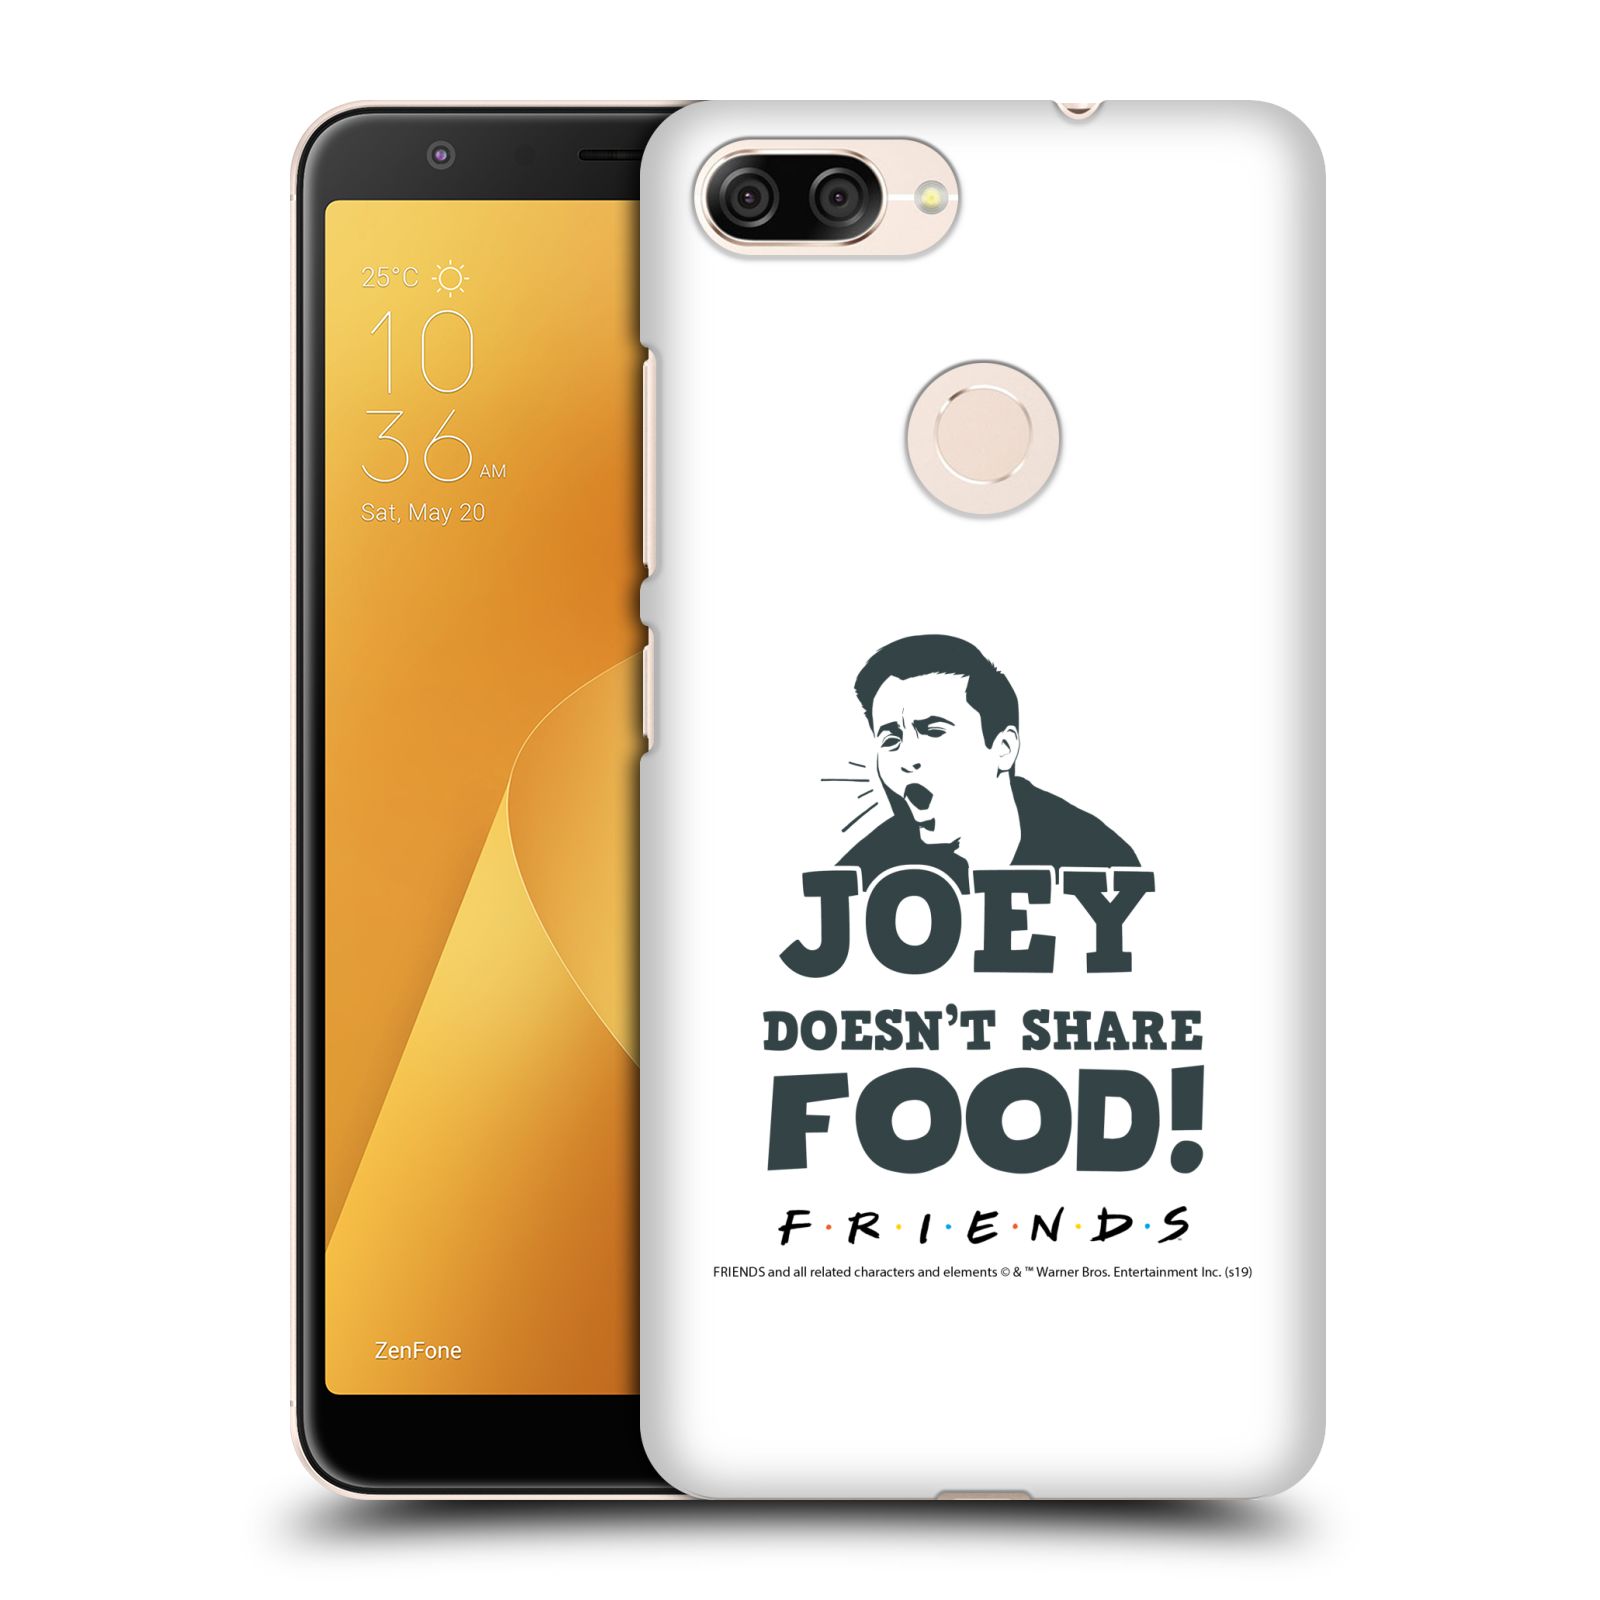 Pouzdro na mobil ASUS ZENFONE Max Plus M1 - HEAD CASE - Seriál Přátelé - Joey se o jídlo nedělí